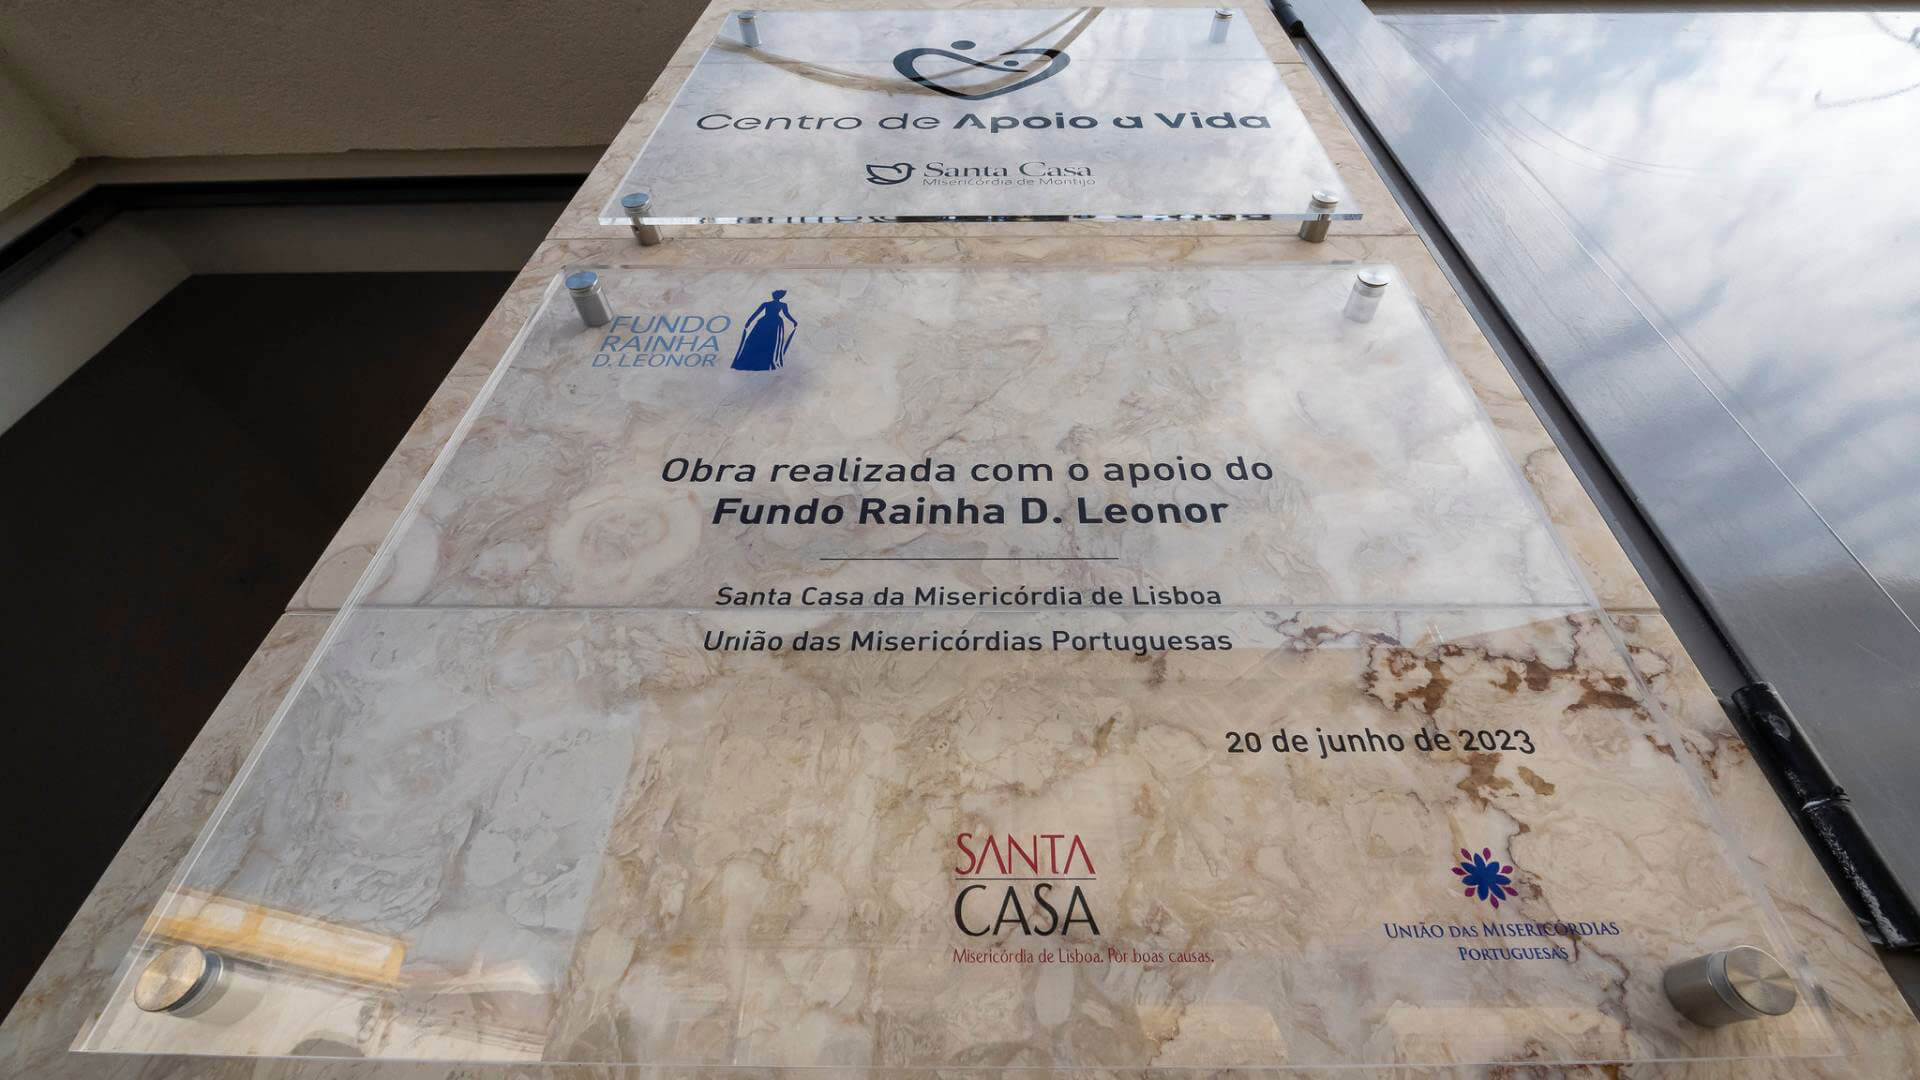 Inaugurado Centro de Apoio à Vida no Montijo financiado pelo Fundo Rainha D. Leonor